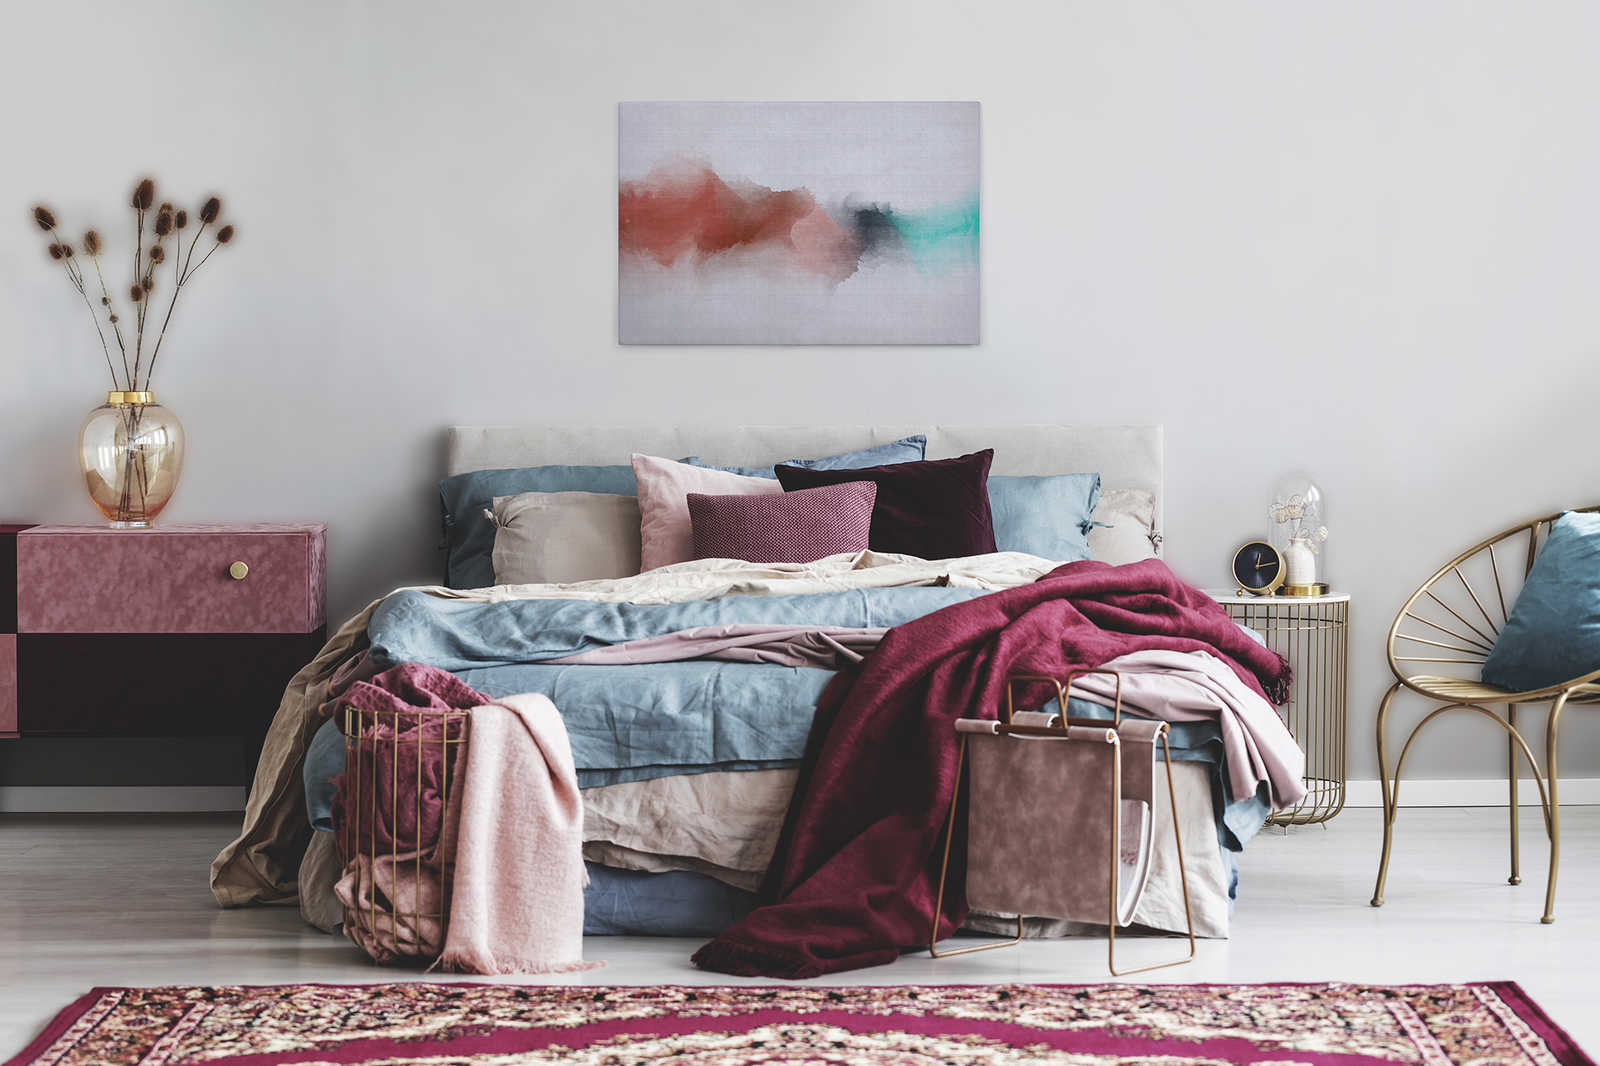             Daydream 2 - Cuadro en lienzo de estructura de lino natural con mancha de color en estilo acuarela - 0,90 m x 0,60 m
        